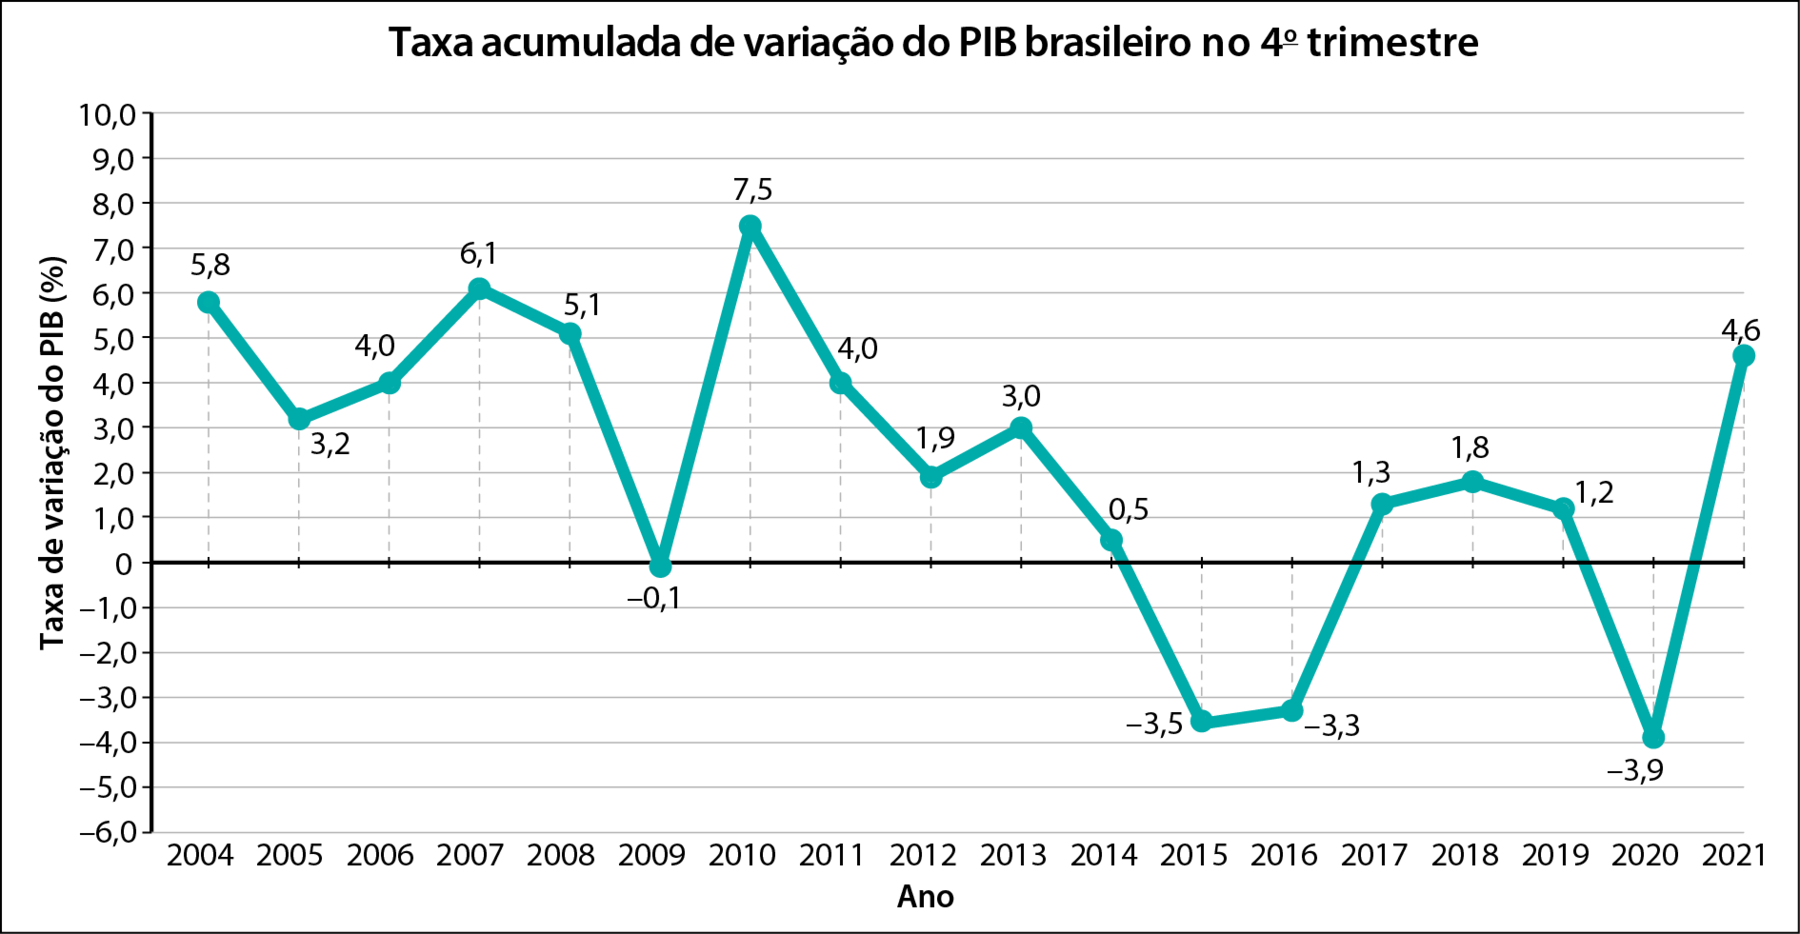 Gráfico em linha. Taxa acumulada de variação do PIB brasileiro no 4º trimestre. Eixo x, ano de 2004 a 2021. Eixo y, Taxa de variação do PIB (%) de menos 6,0 a 10,0. Os dados são: 2004: 5,8. 2005: 3,2. 2006: 4,0.2007: 6,1.2008: 5,1.2009: menos 0,1. 2010: 7,5.2011: 4,0.2012: 1,9. 2013: 3,0.2014: 0,5.2015: menos 3,5.2016: menos 3,3. 2017: 1,3.2018: 1,8.2019: 1,2.2020: menos 3,9.2021: 4,6.